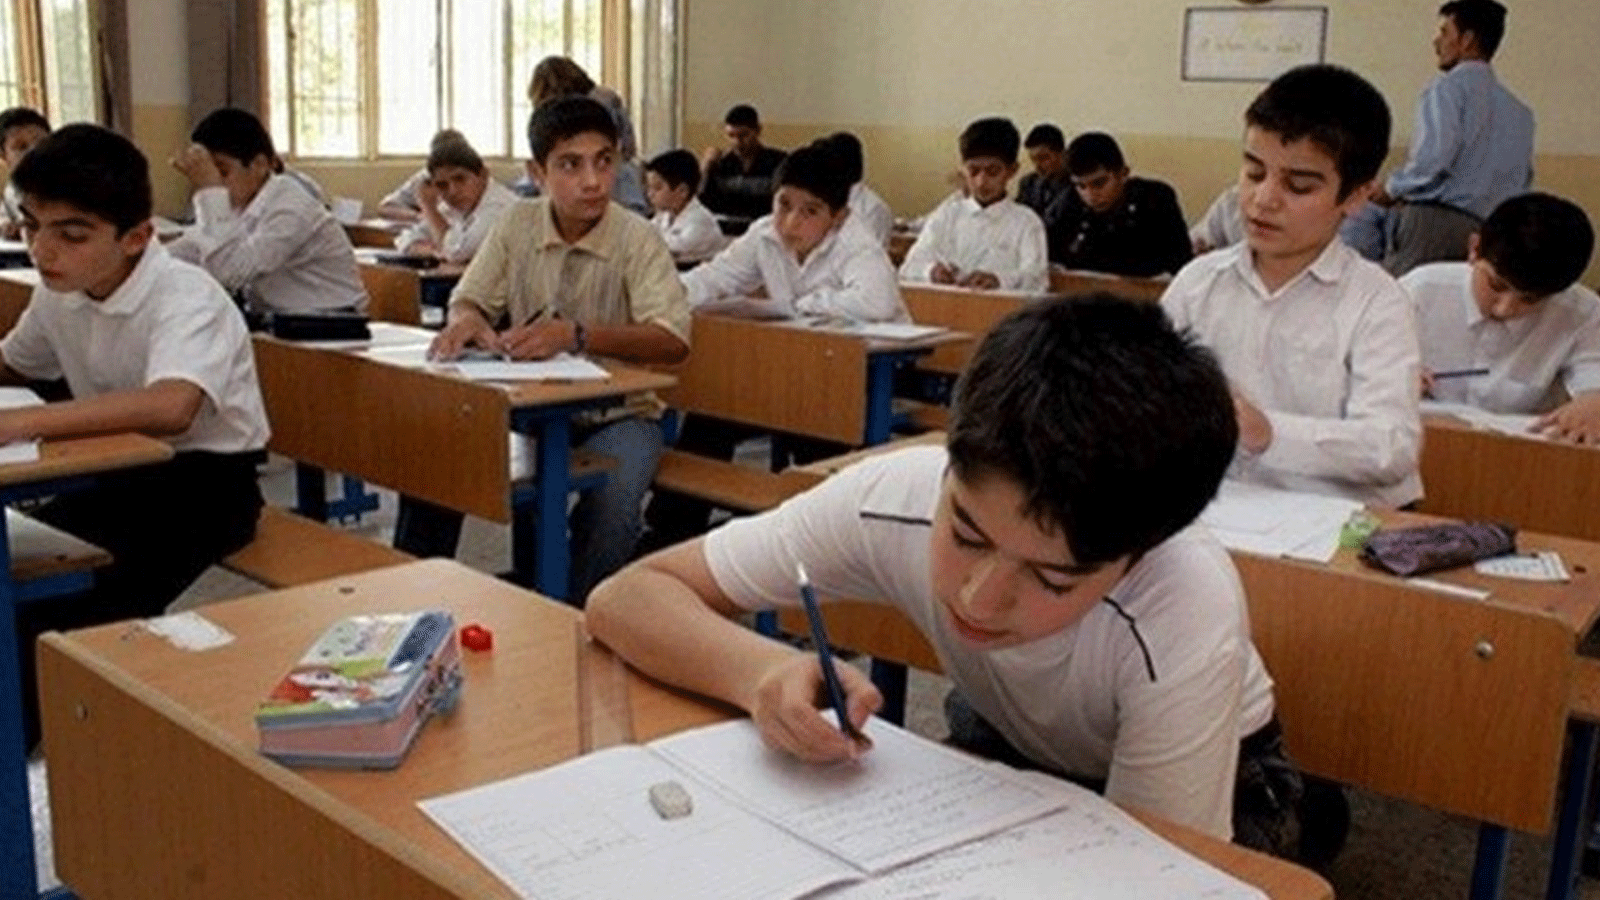 طلاب عراقيون في مرحلة المتوسط الثاني يؤدون امتحاناتهم الوزارية قبل كشف تسريب أسئلة امتحاناتهم (تويتر)